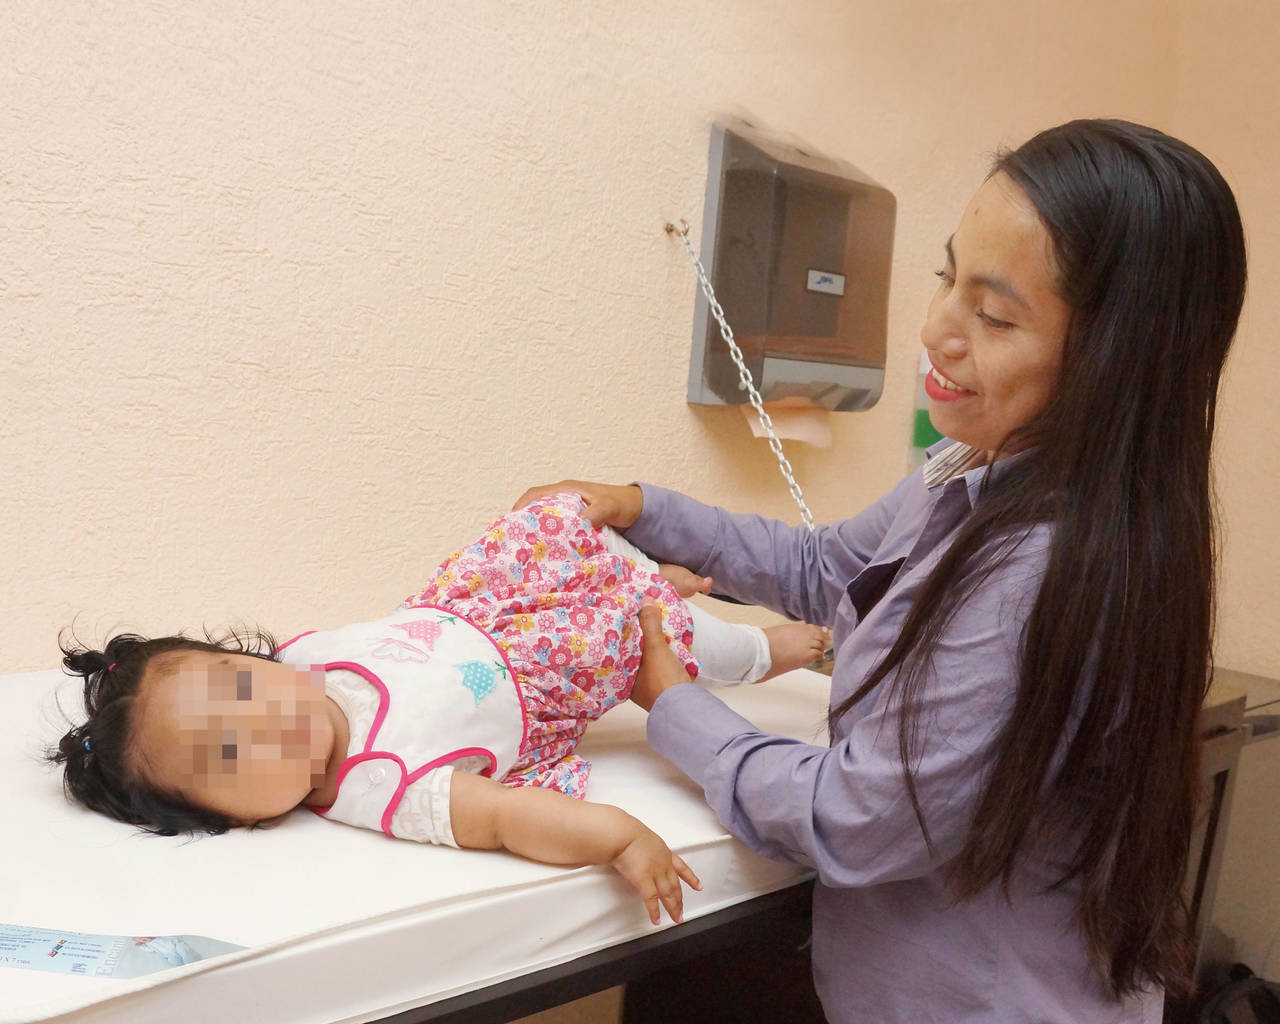 Apoyo. Eluzaith Hernández, de 22 años, es beneficiaria de un proyecto que busca dignificar la maternidad en centros escolares; la sala está acondicionada para que las mujeres alimenten a sus hijos y luego vuelvan a sus actividades escolares. (EL UNIVERSAL)